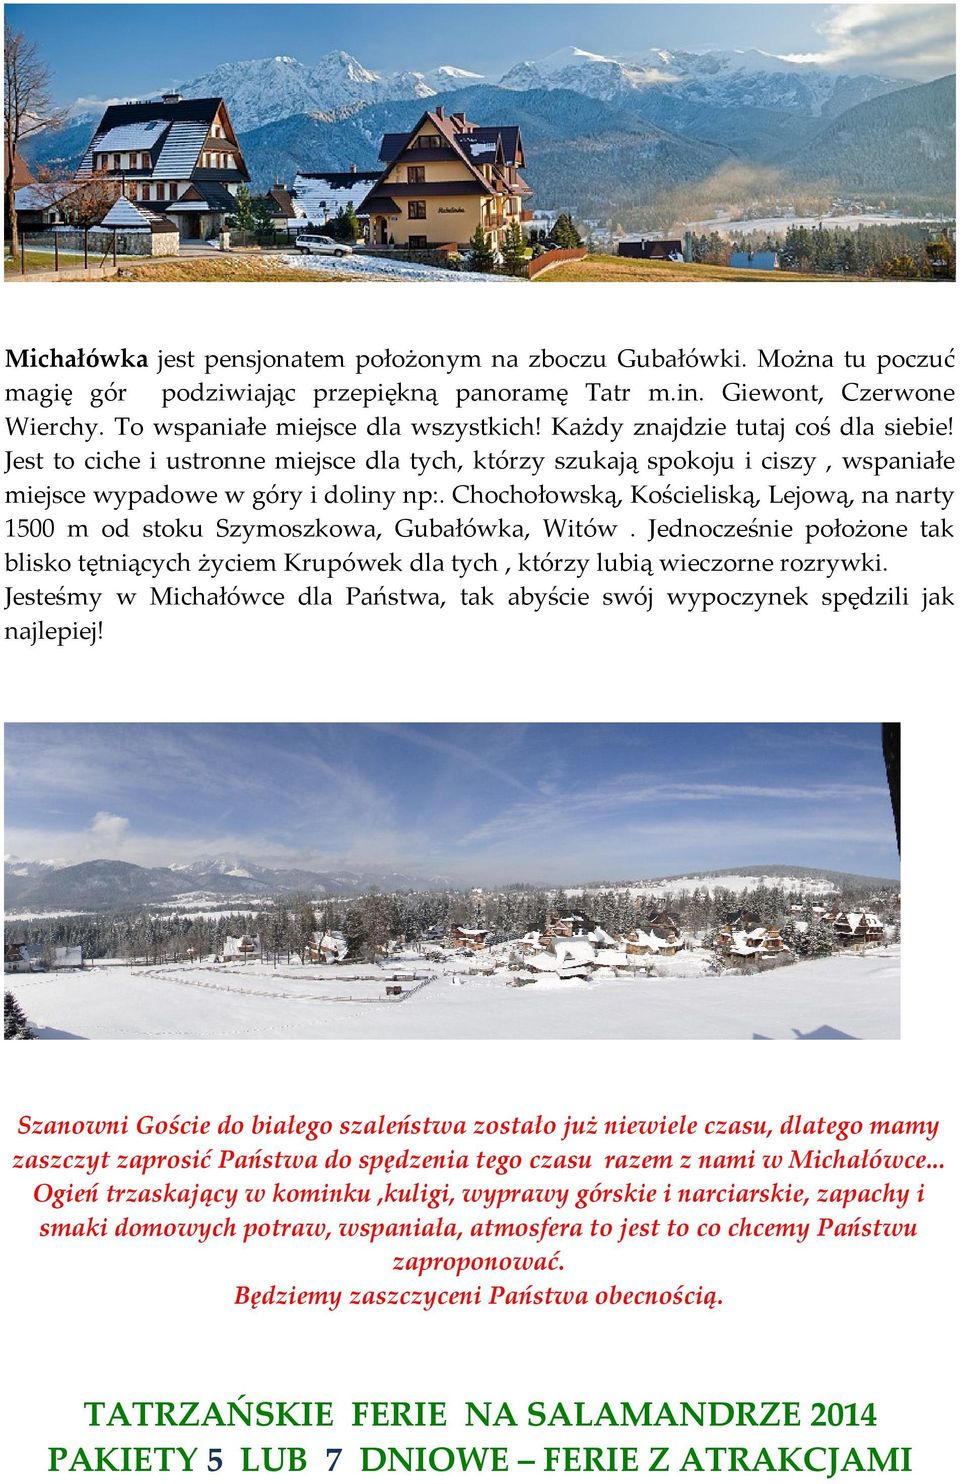 Chochołowską, Kościeliską, Lejową, na narty 1500 m od stoku Szymoszkowa, Gubałówka, Witów. Jednocześnie położone tak blisko tętniących życiem Krupówek dla tych, którzy lubią wieczorne rozrywki.